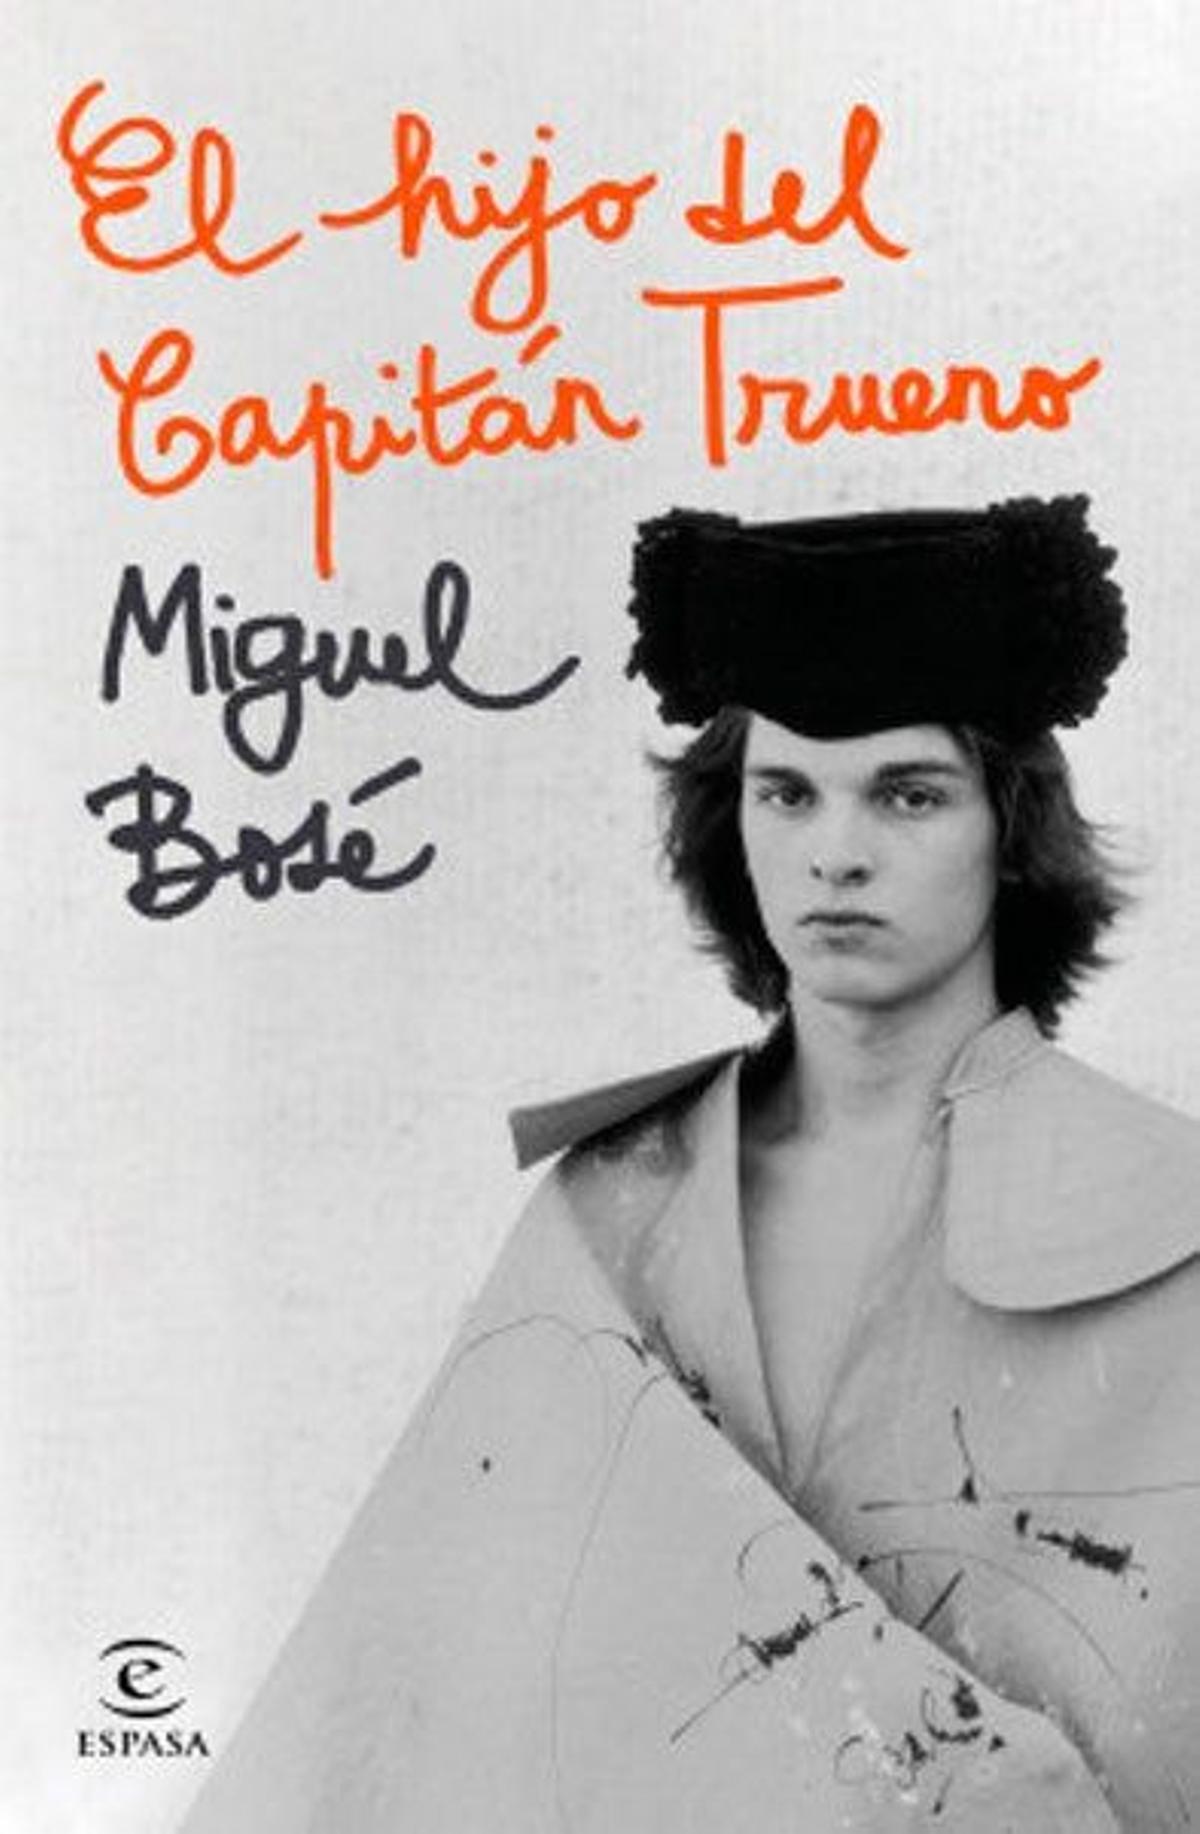 'El hijo del capitán trueno', la autobiografía de Miguel Bosé